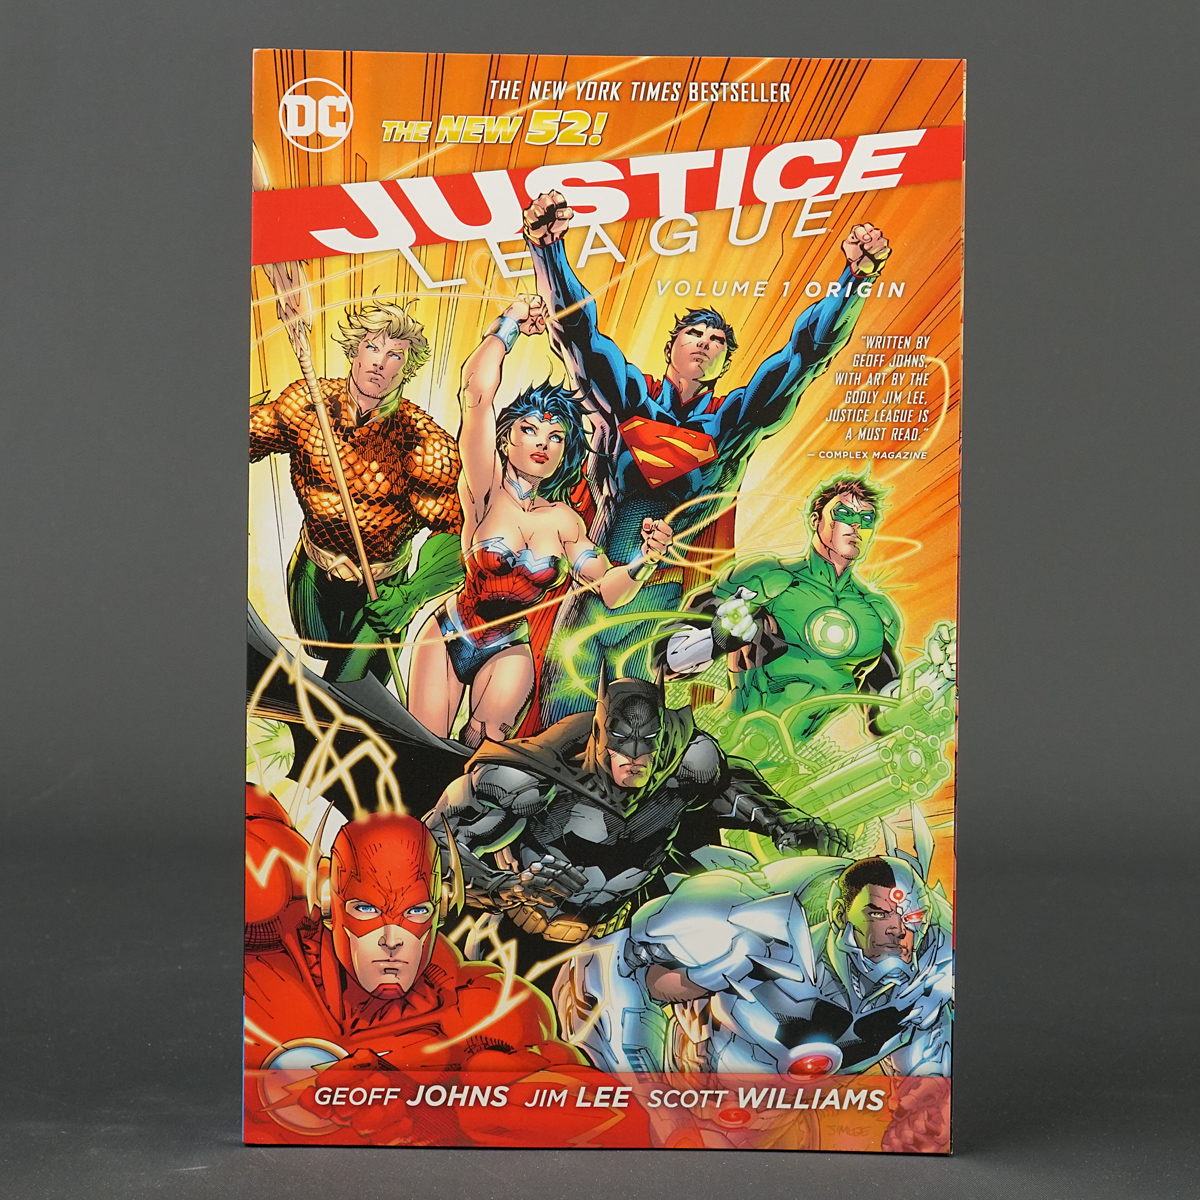 JUSTICE LEAGUE Vol 1 ORIGIN (NEW 52) tpb DC Comics OCT127119 (A/CA) Lee (W)Johns